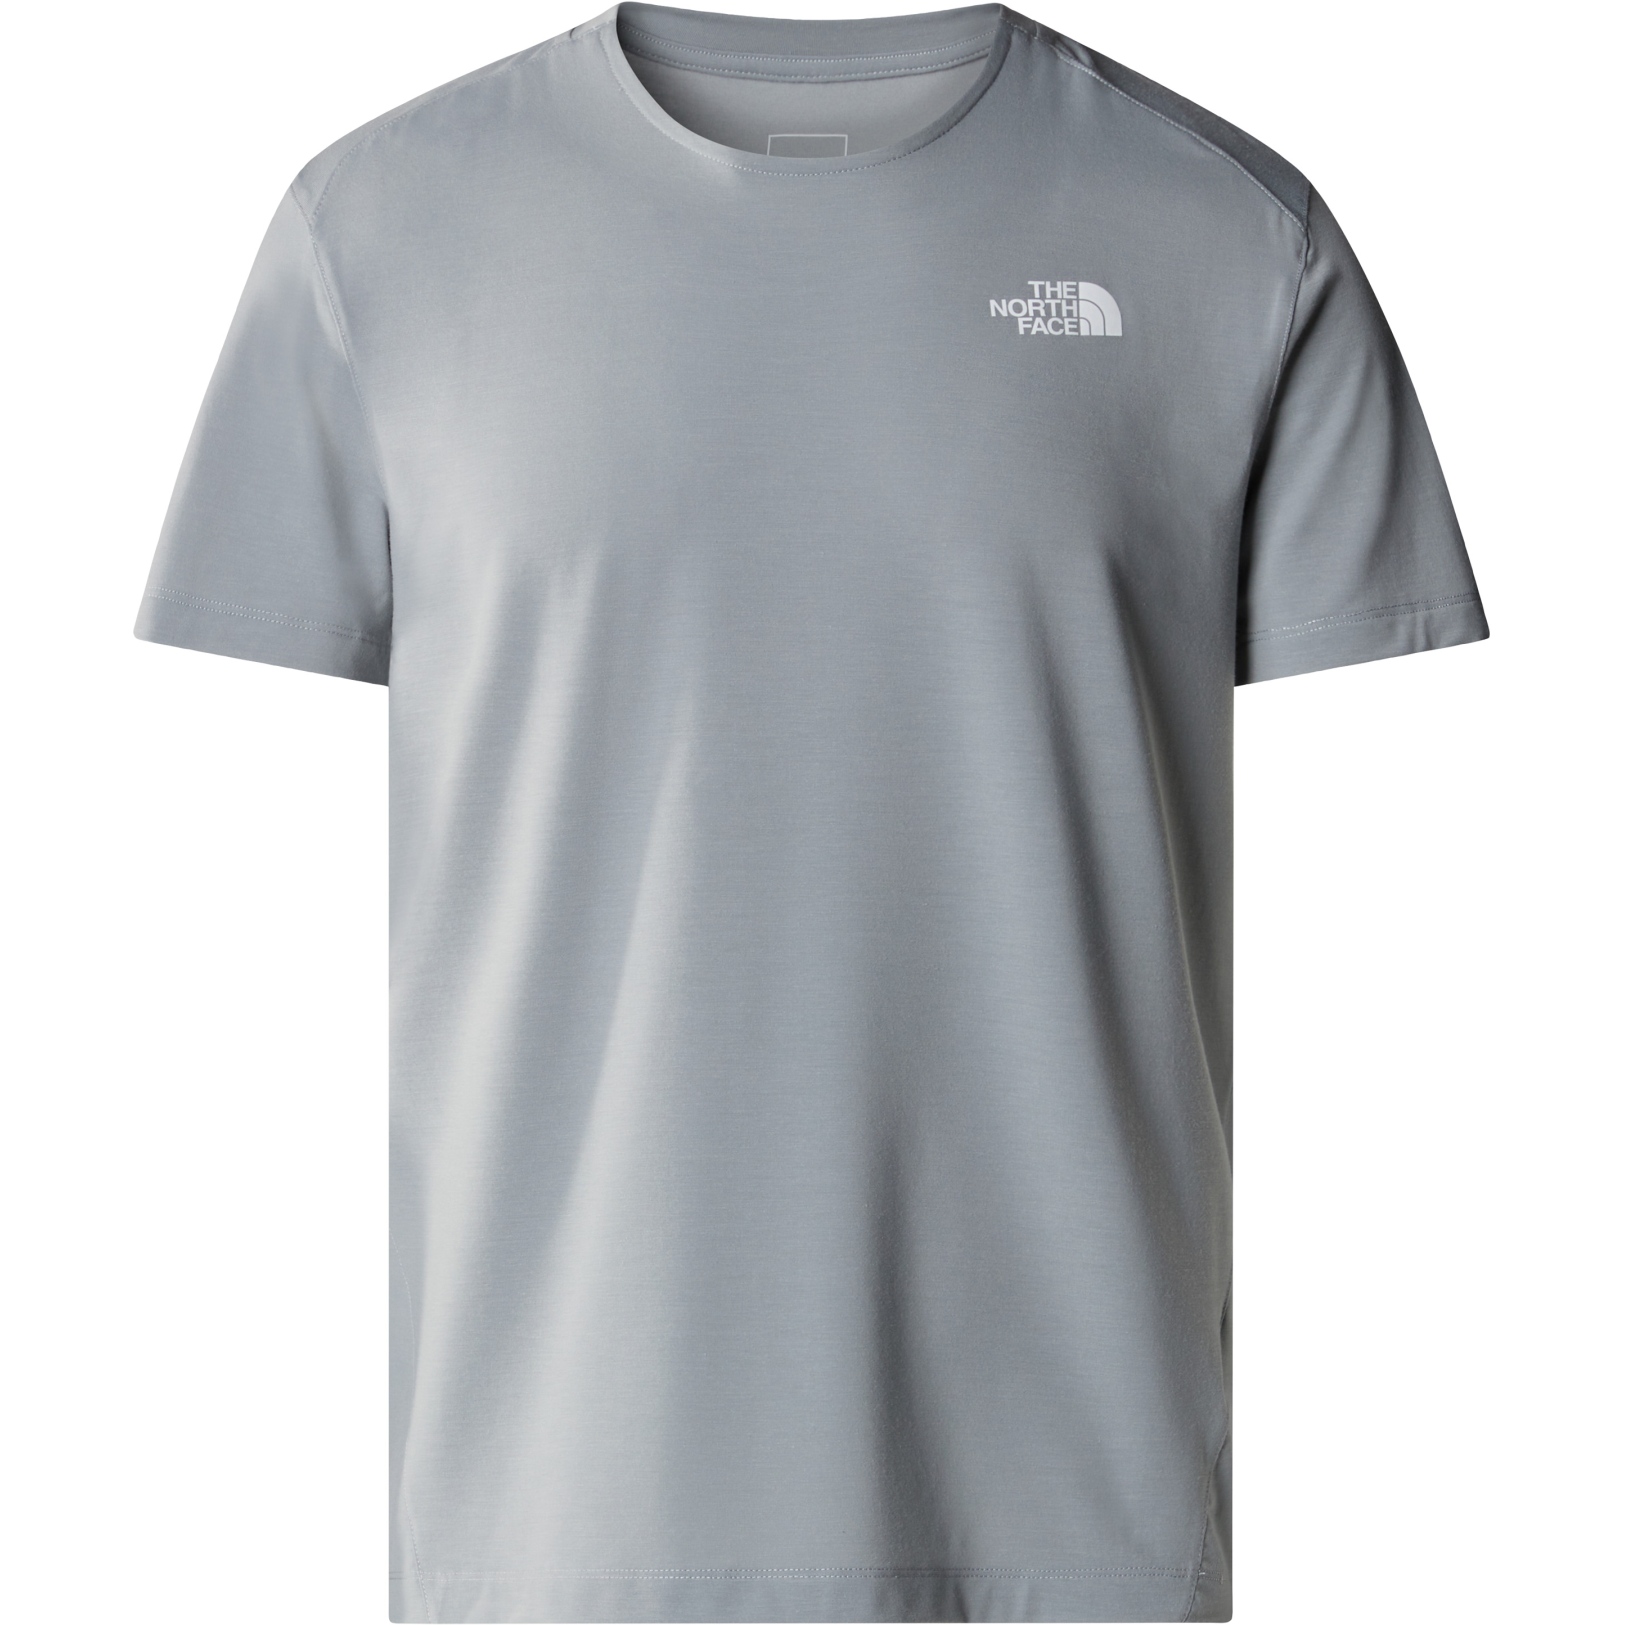 Produktbild von The North Face Lightning Alpine T-Shirt Herren - Monument Grey